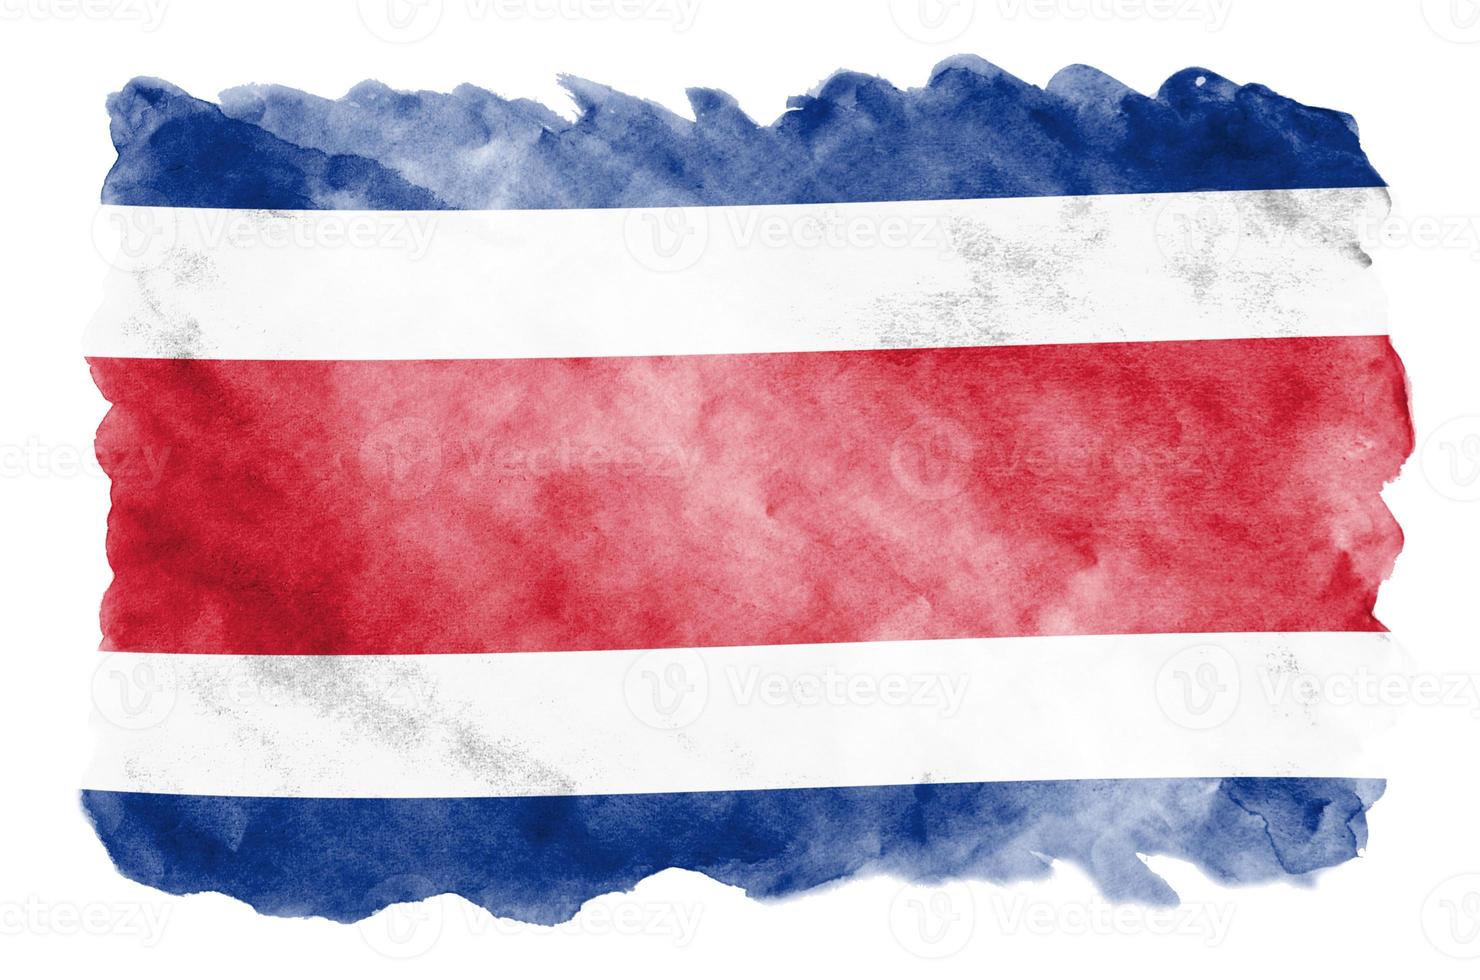 bandeira da costa rica é retratada em estilo aquarela líquido isolado no fundo branco foto